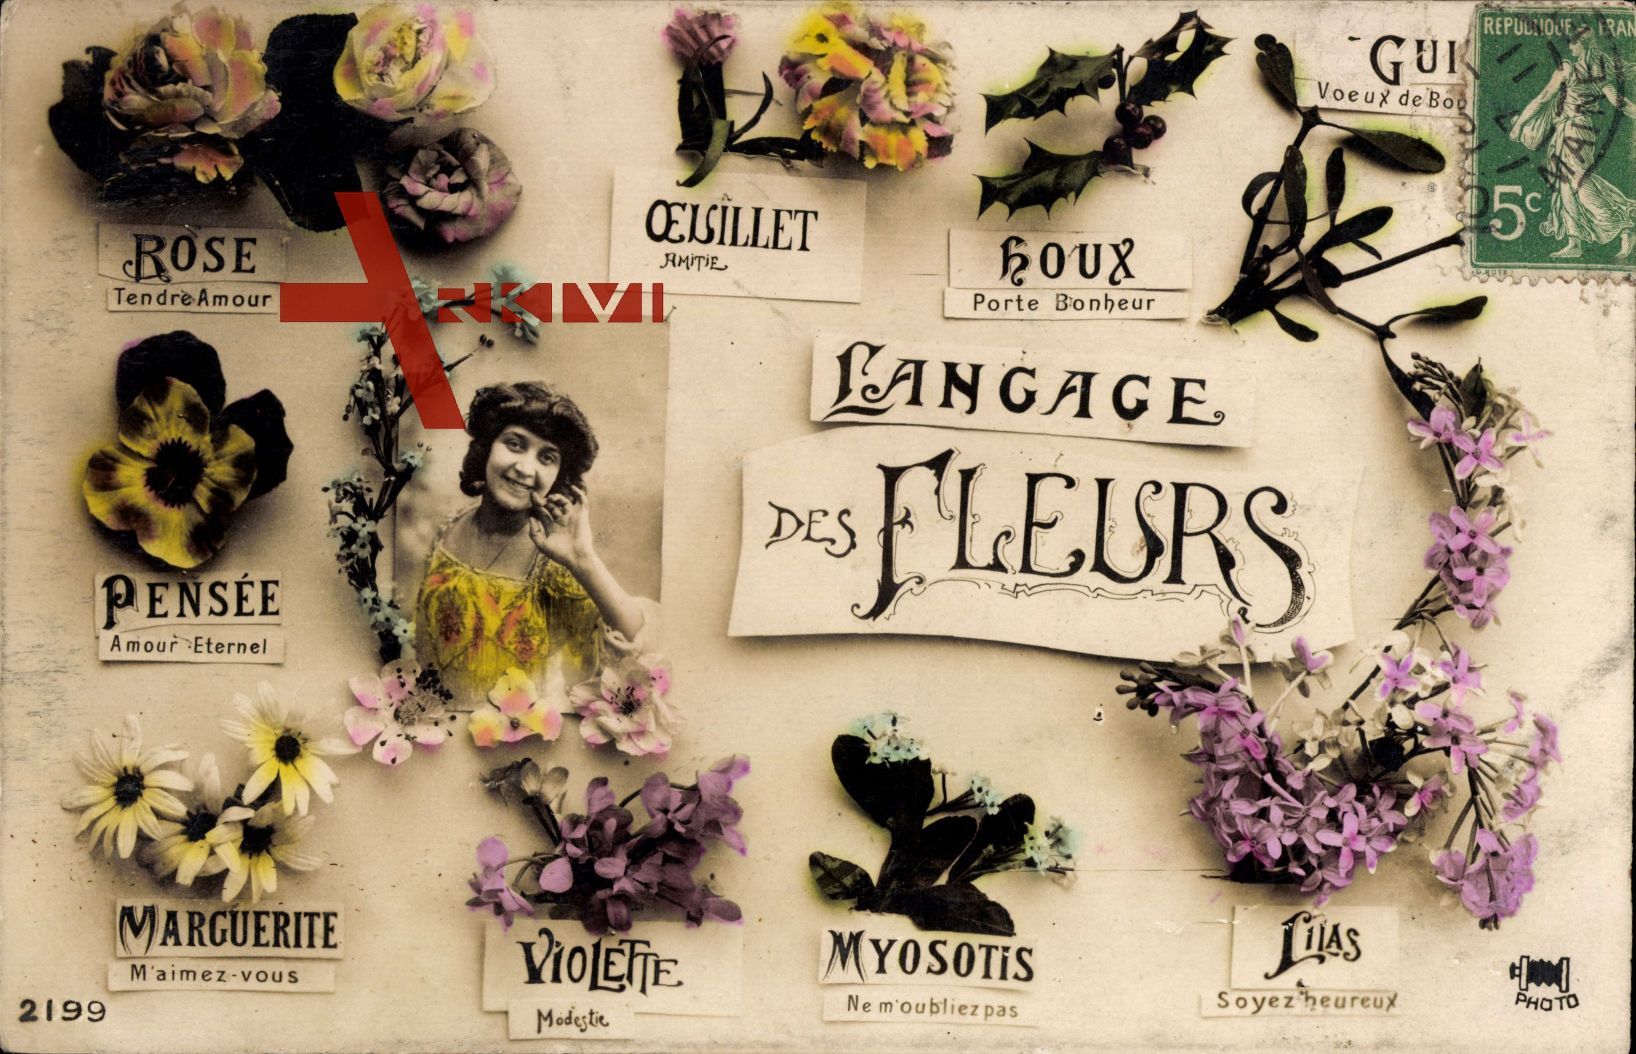 Langage des Fleurs, Blumensprache, Rose, Pensée, Marguerite, Violette